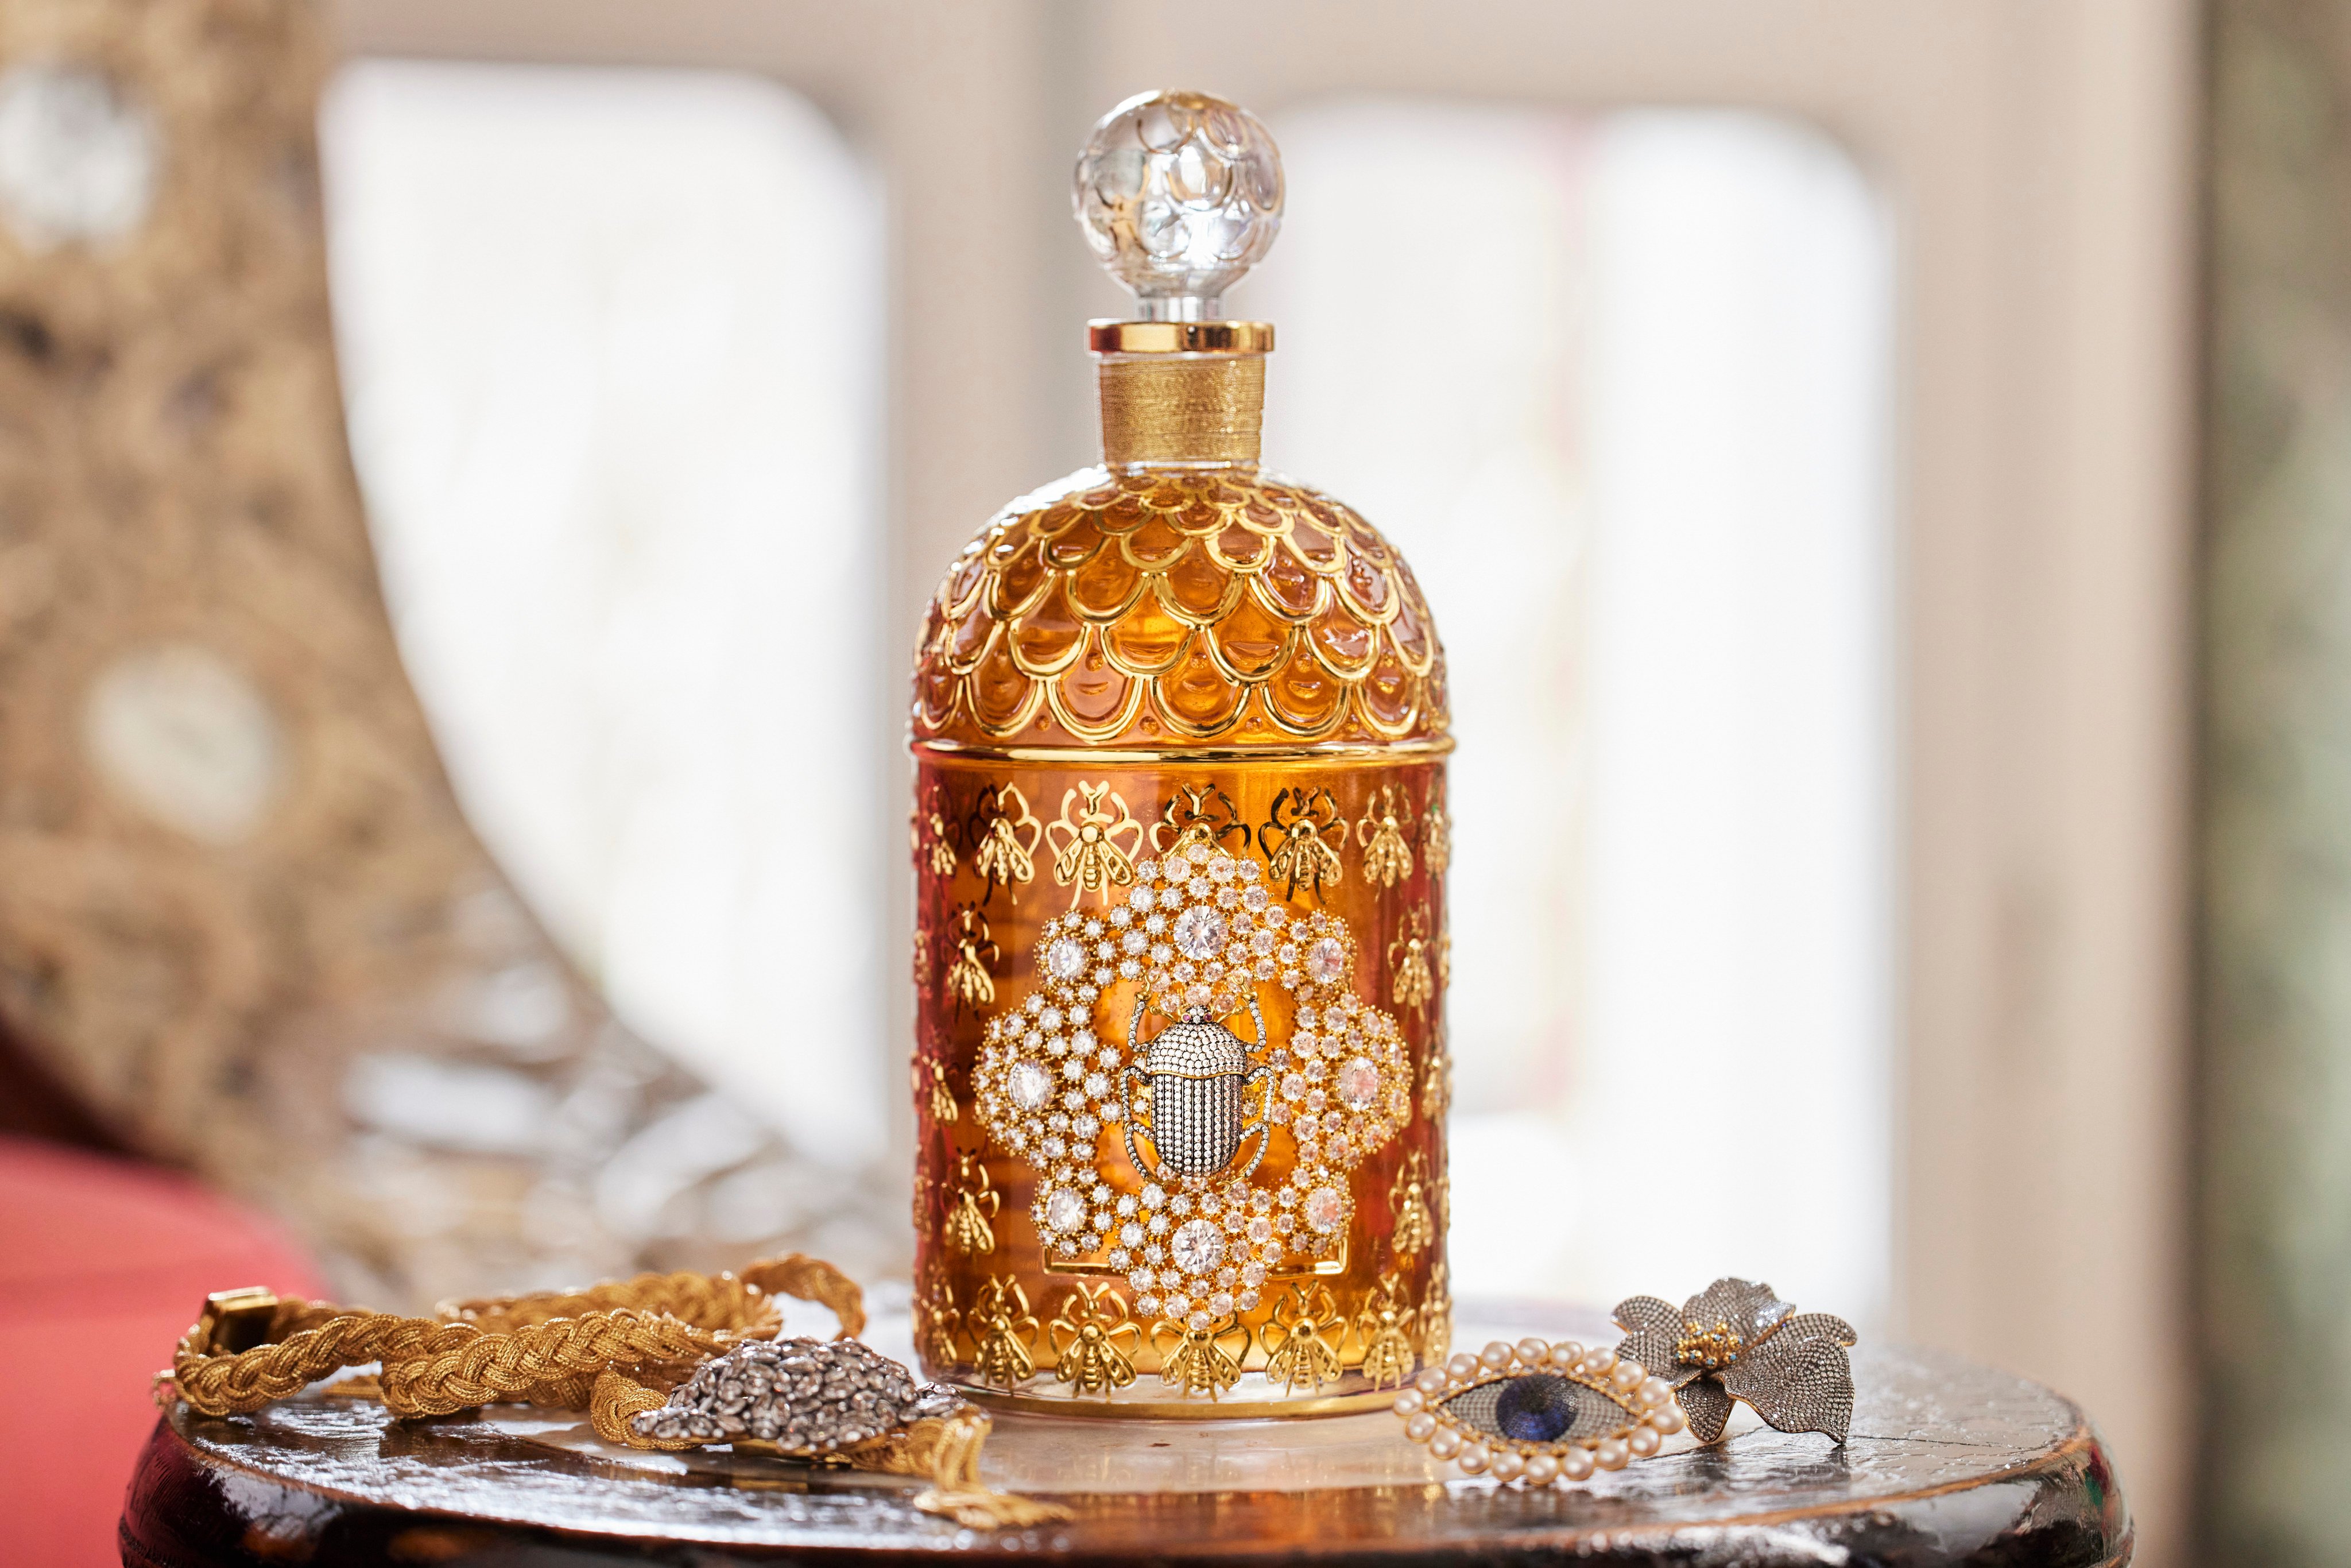 Guerlain’s Bee Bottle is opulent indeed. Photos: Handout